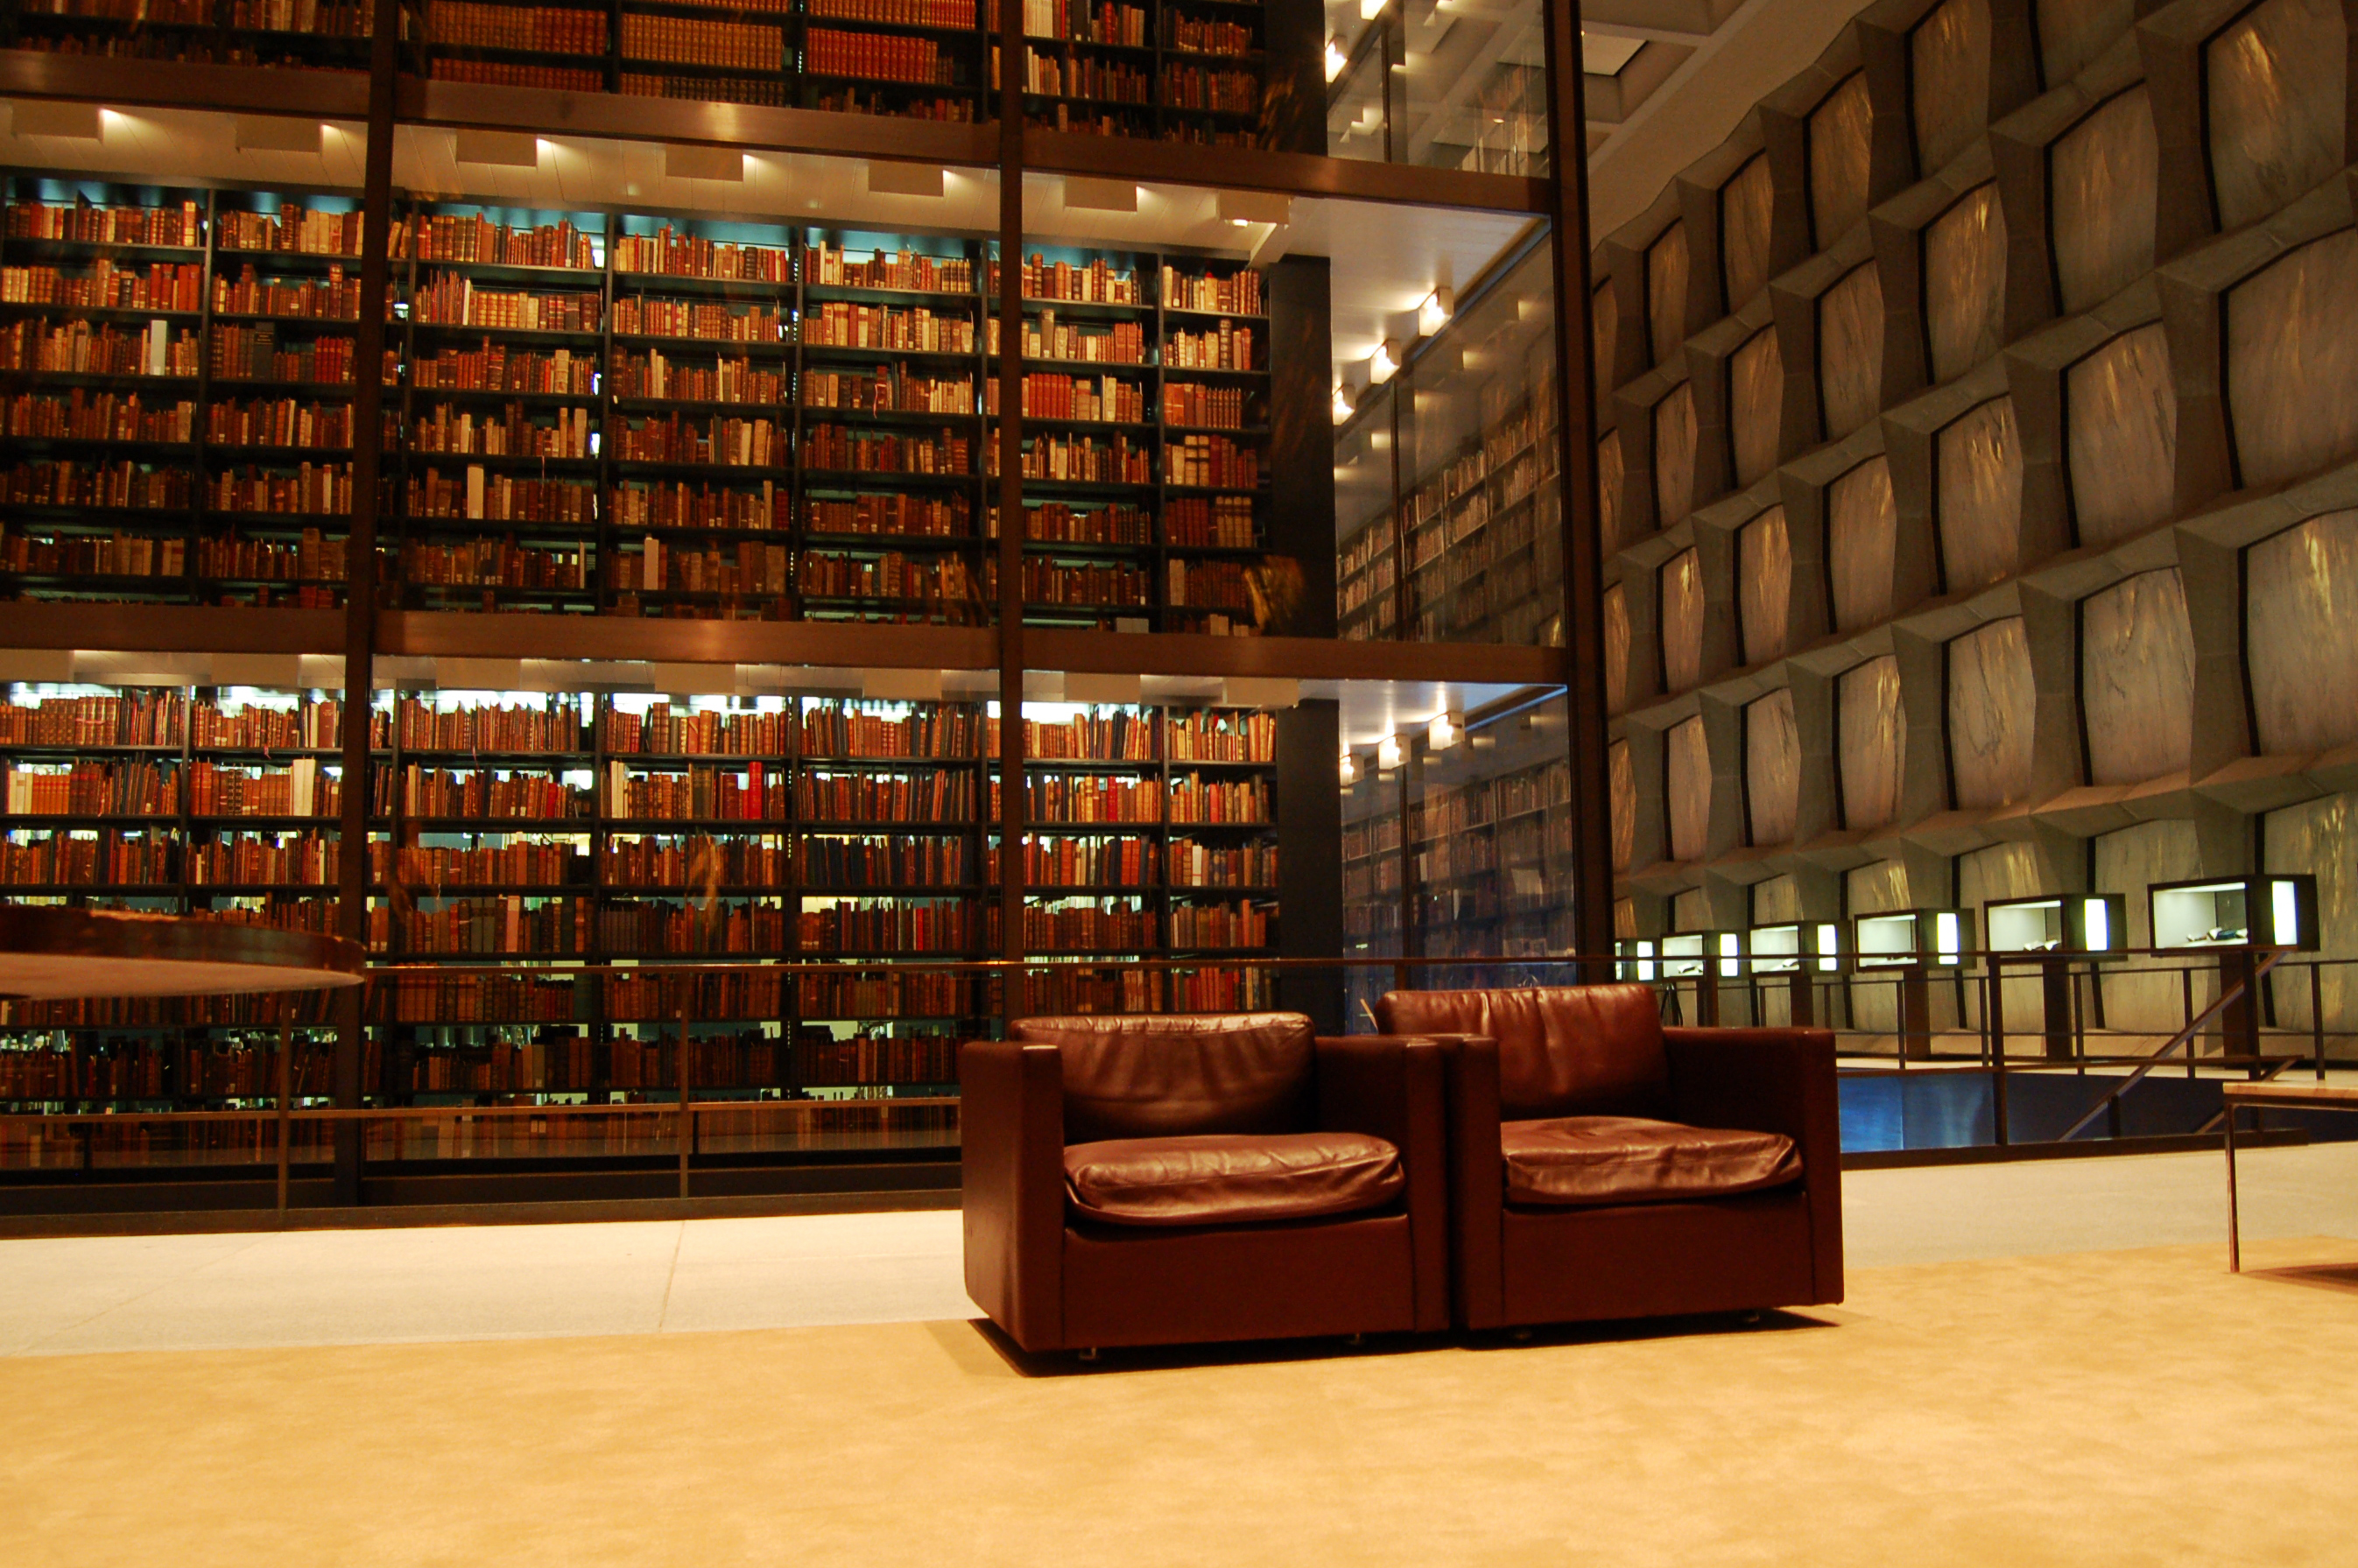 Электронная библиотека университета. Йельский университет библиотека. Библиотека Бейнеке в Йельском университете. Королевская библиотека Дании. Библиотека Бейнеке в Йельском университете (1963).